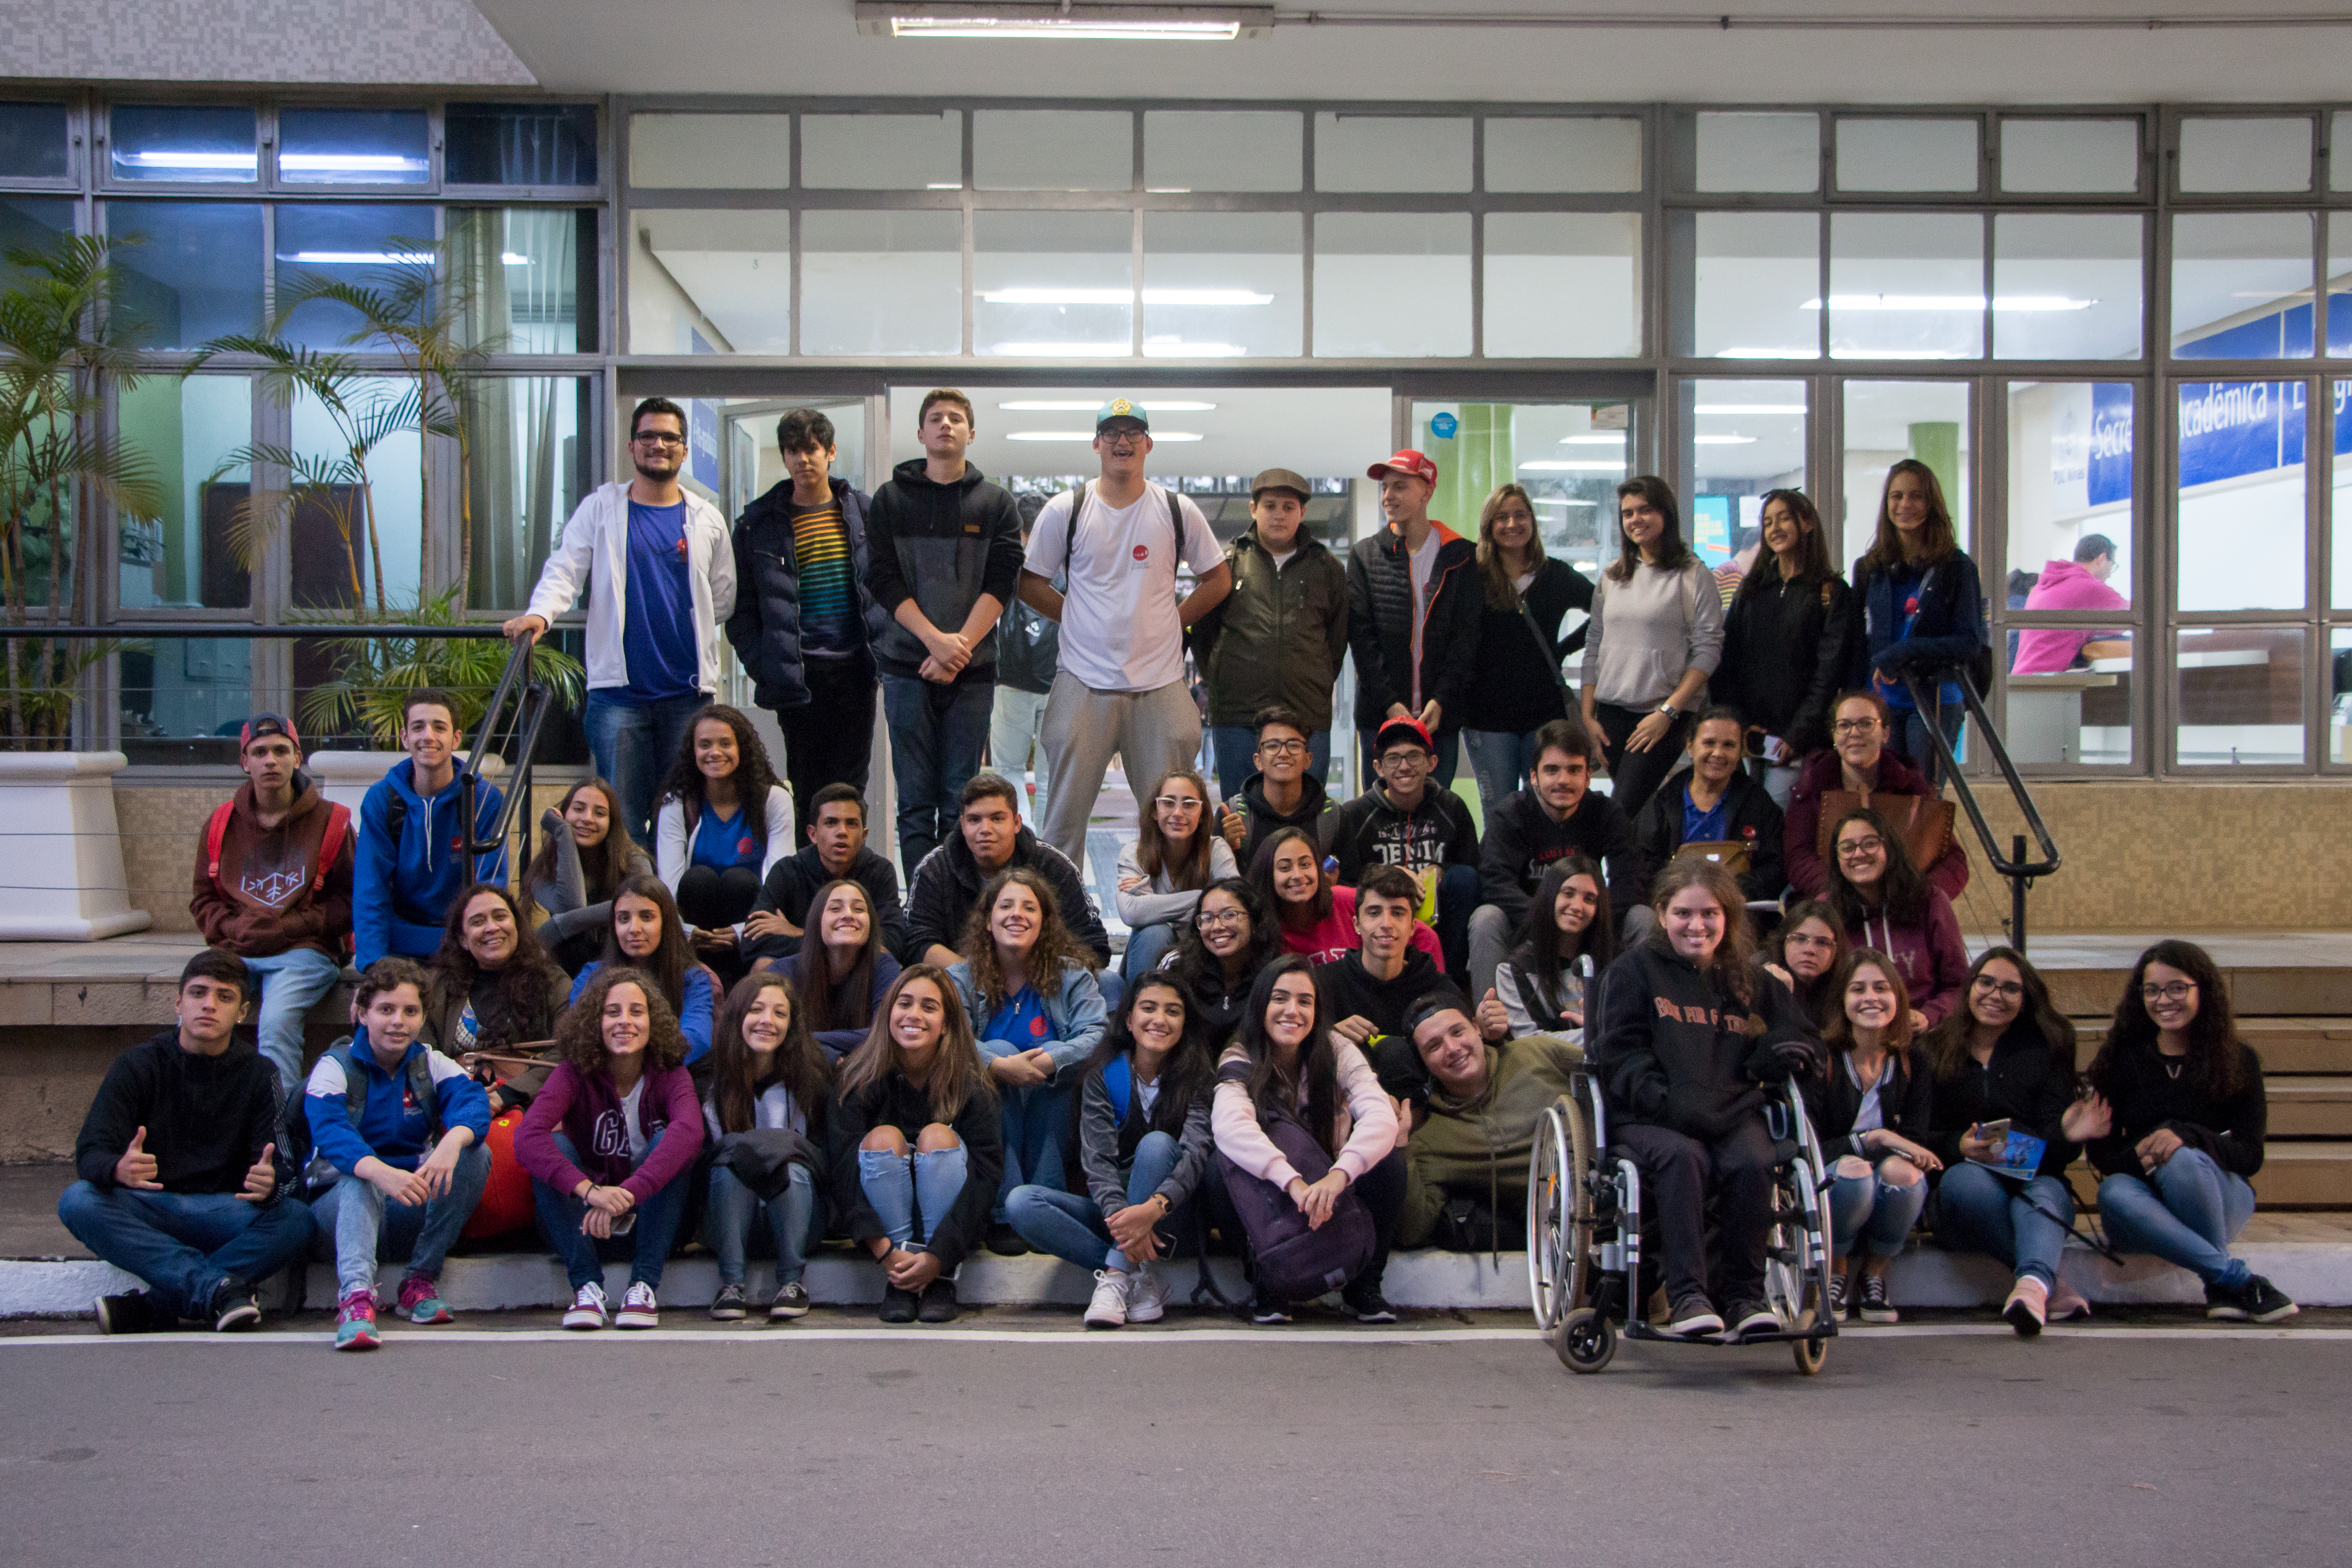 Cerca de 50 alunos da Escola Delfim Moreira de Santa Rita do Sapucaí visitaram a PUC Minas Poços de Caldas